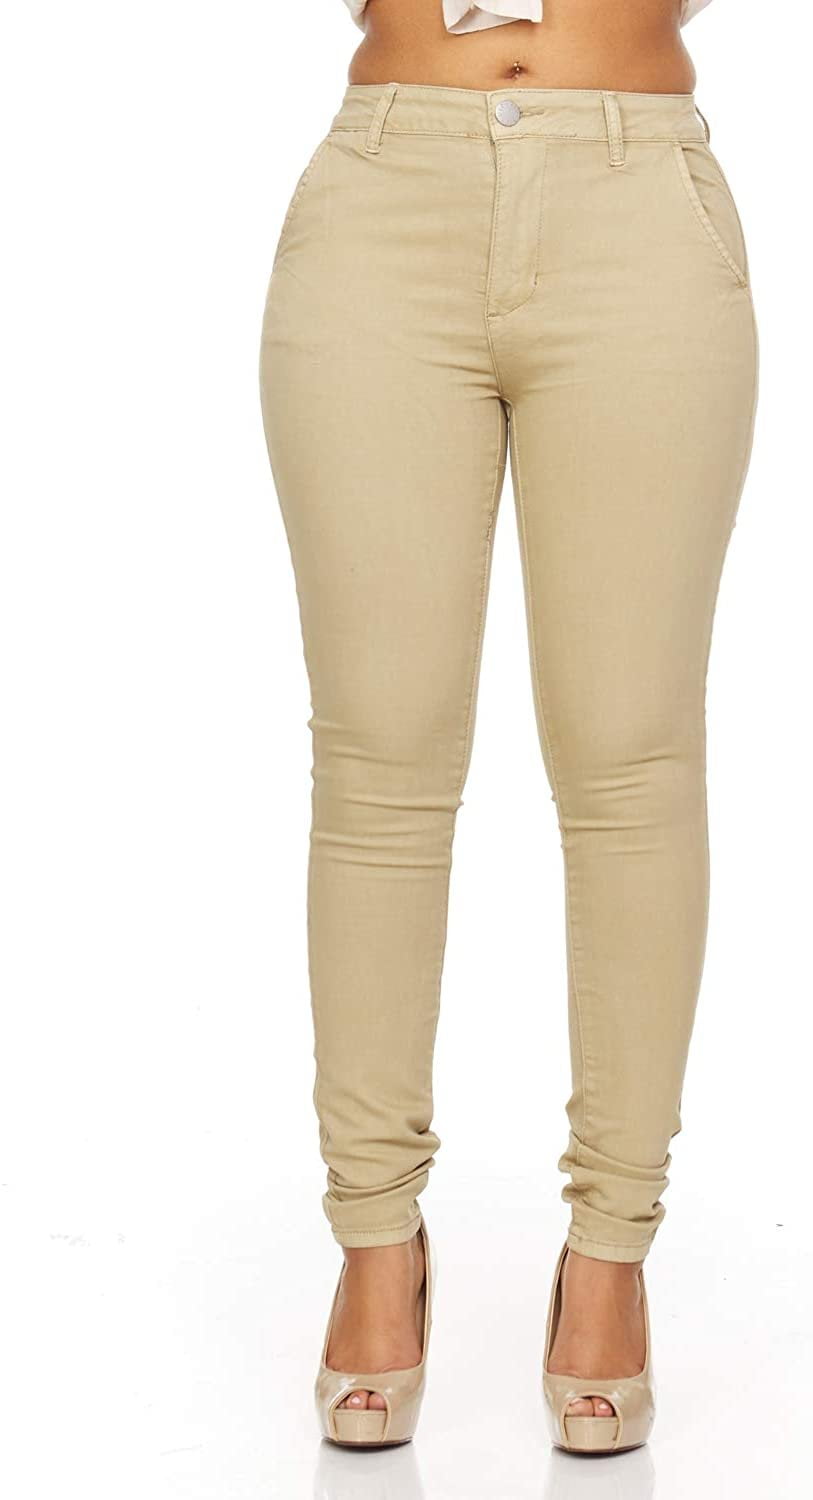 Cute Teen Girl Teen Girlss Skinny Jeans Trouser Pant Style Side Slant  Pockets Juniors Size 15/16 Light Khaki Brown